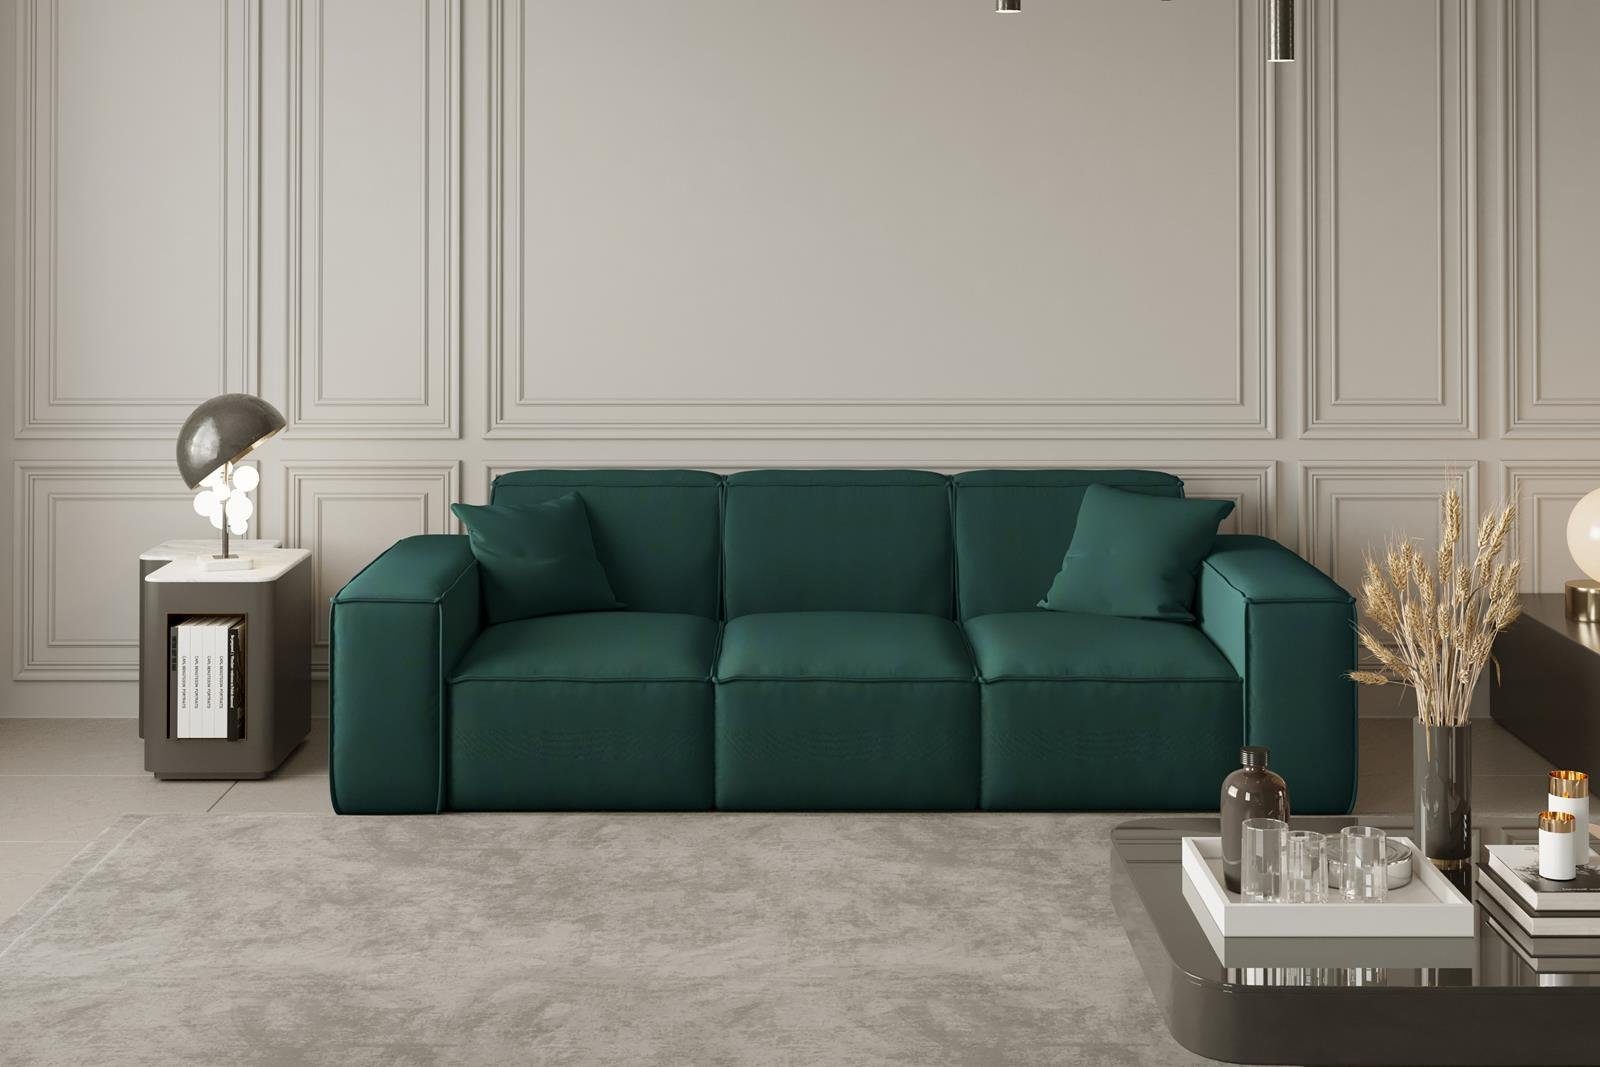 Beautysofa Sofa Lugano, 3-Sitzer Sofa aus Wellenfedern Veloursstoff, Dreisitzer modernes oder Stil, Cordstoff inklusive im